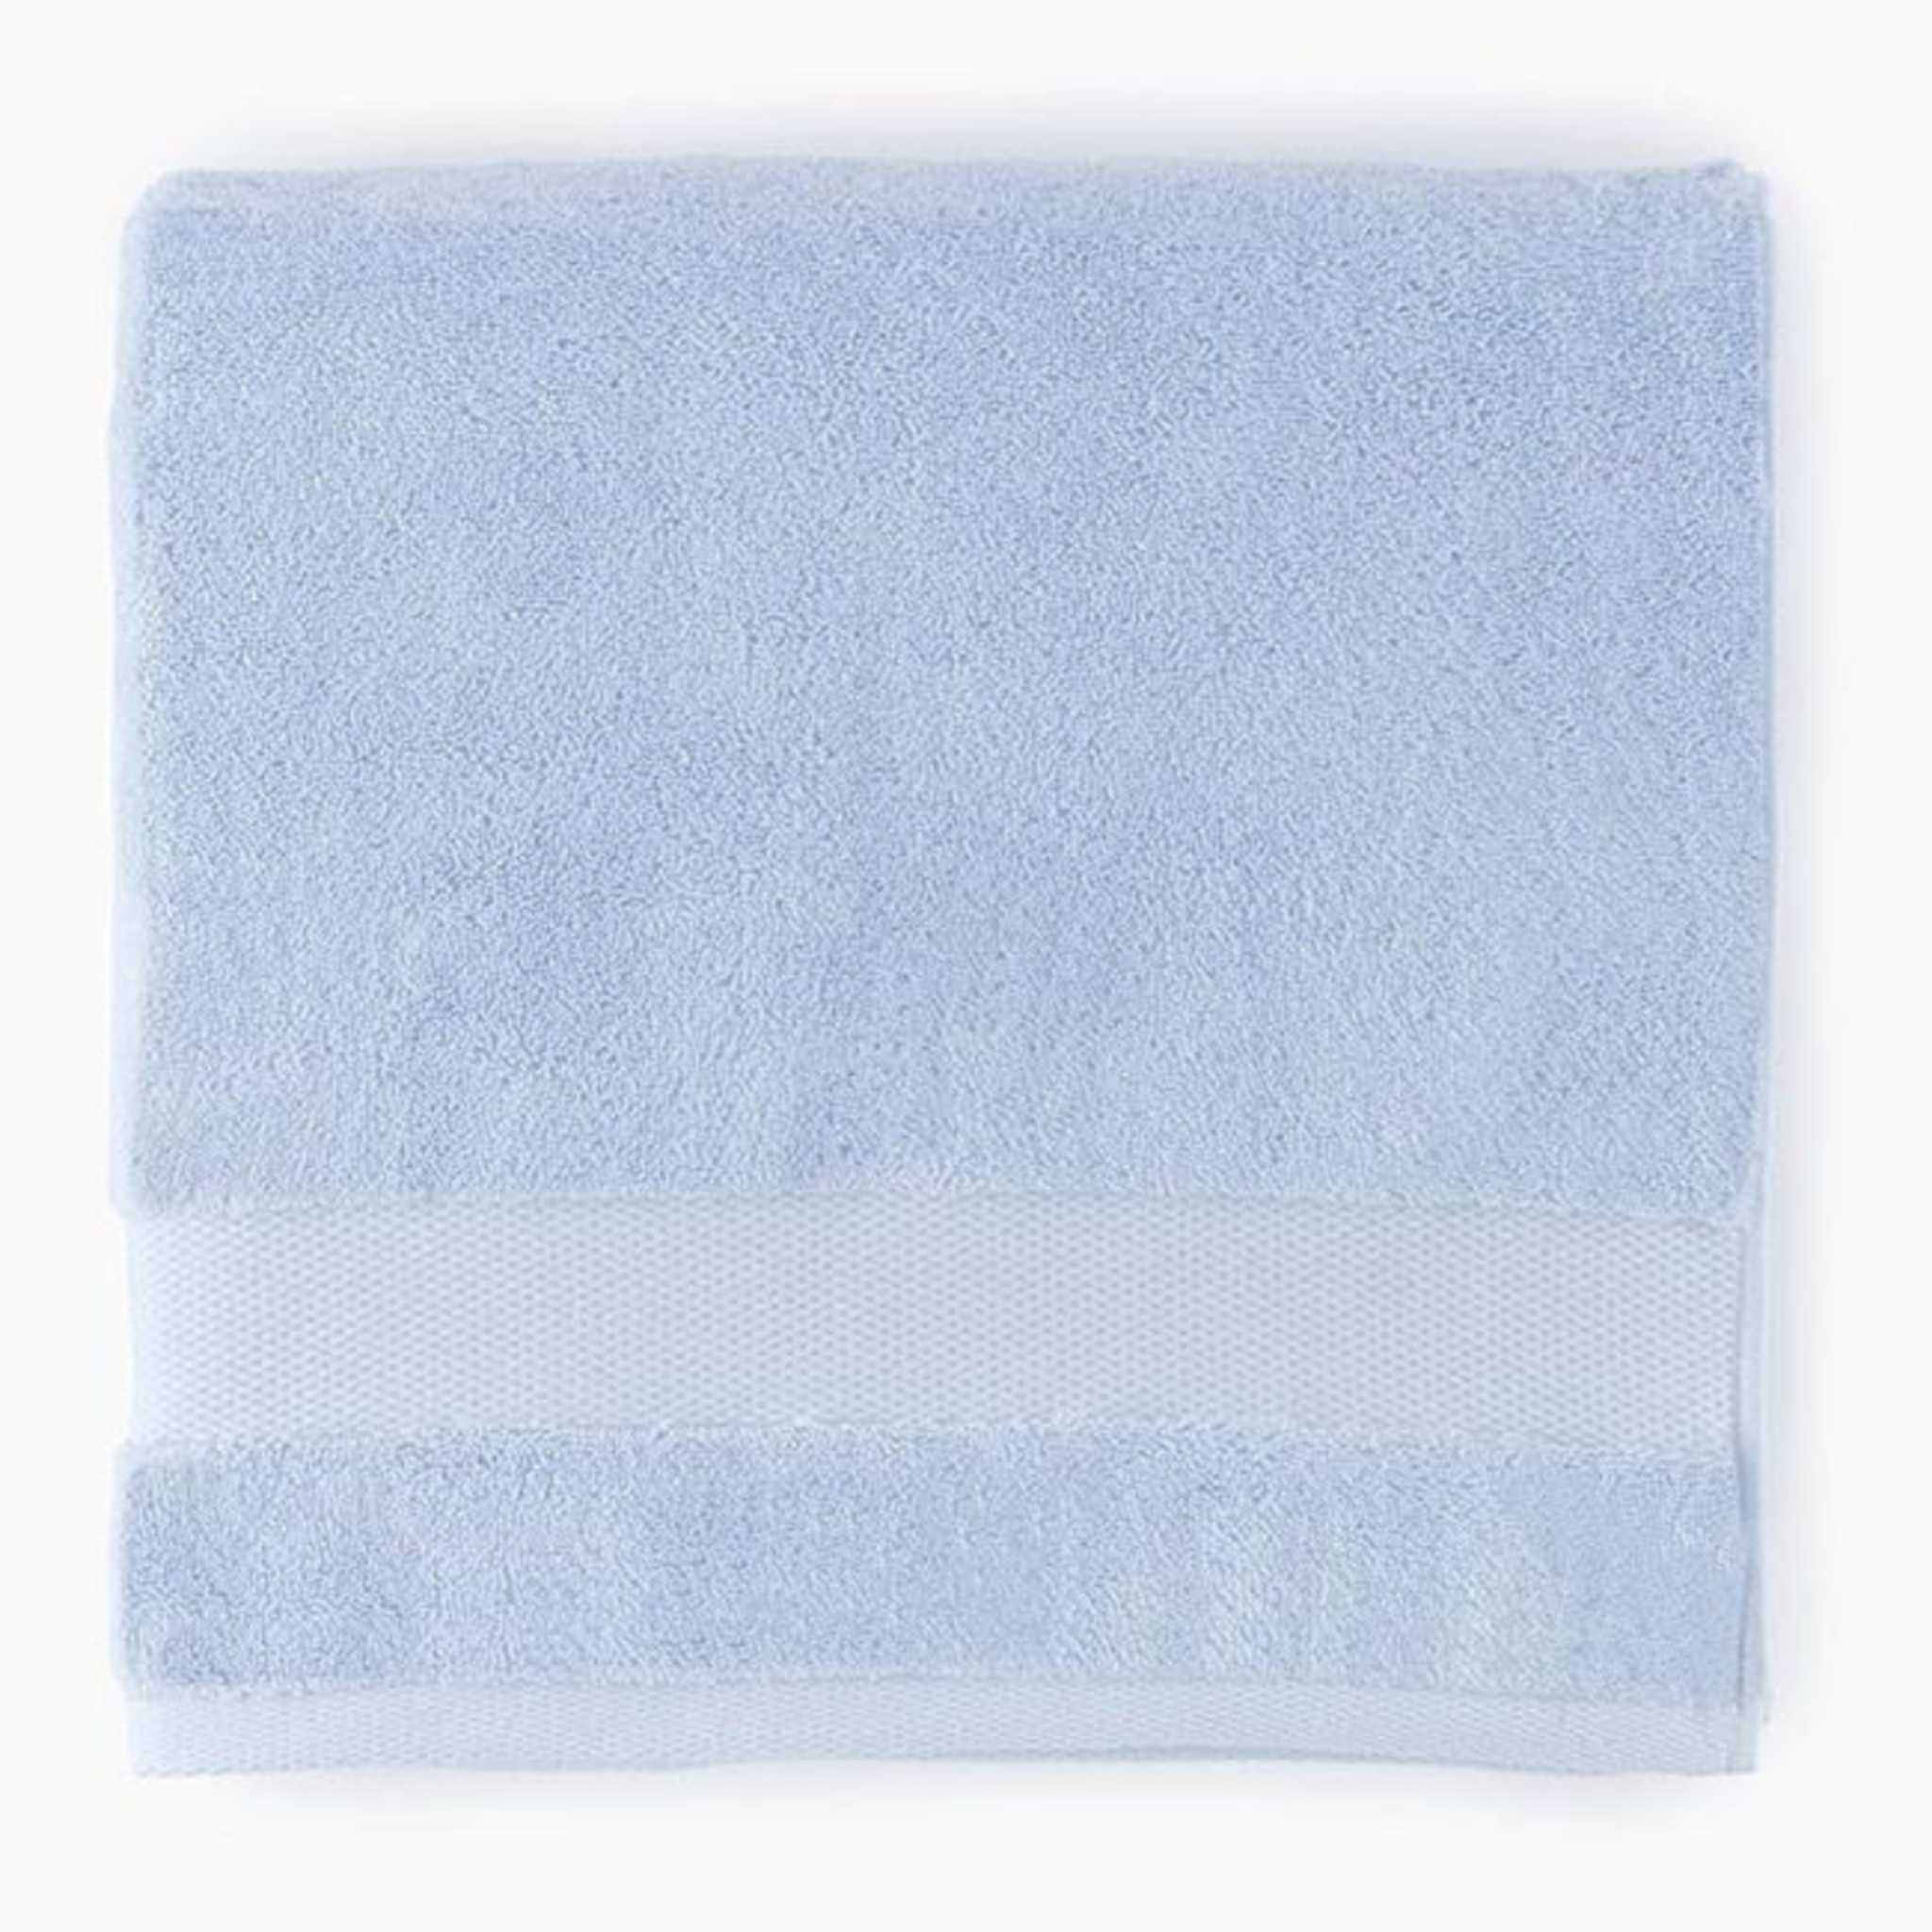 https://flandb.com/cdn/shop/products/Sferra-Bello-Bath-Towels-Blue-Main_5000x.png?v=1668167930